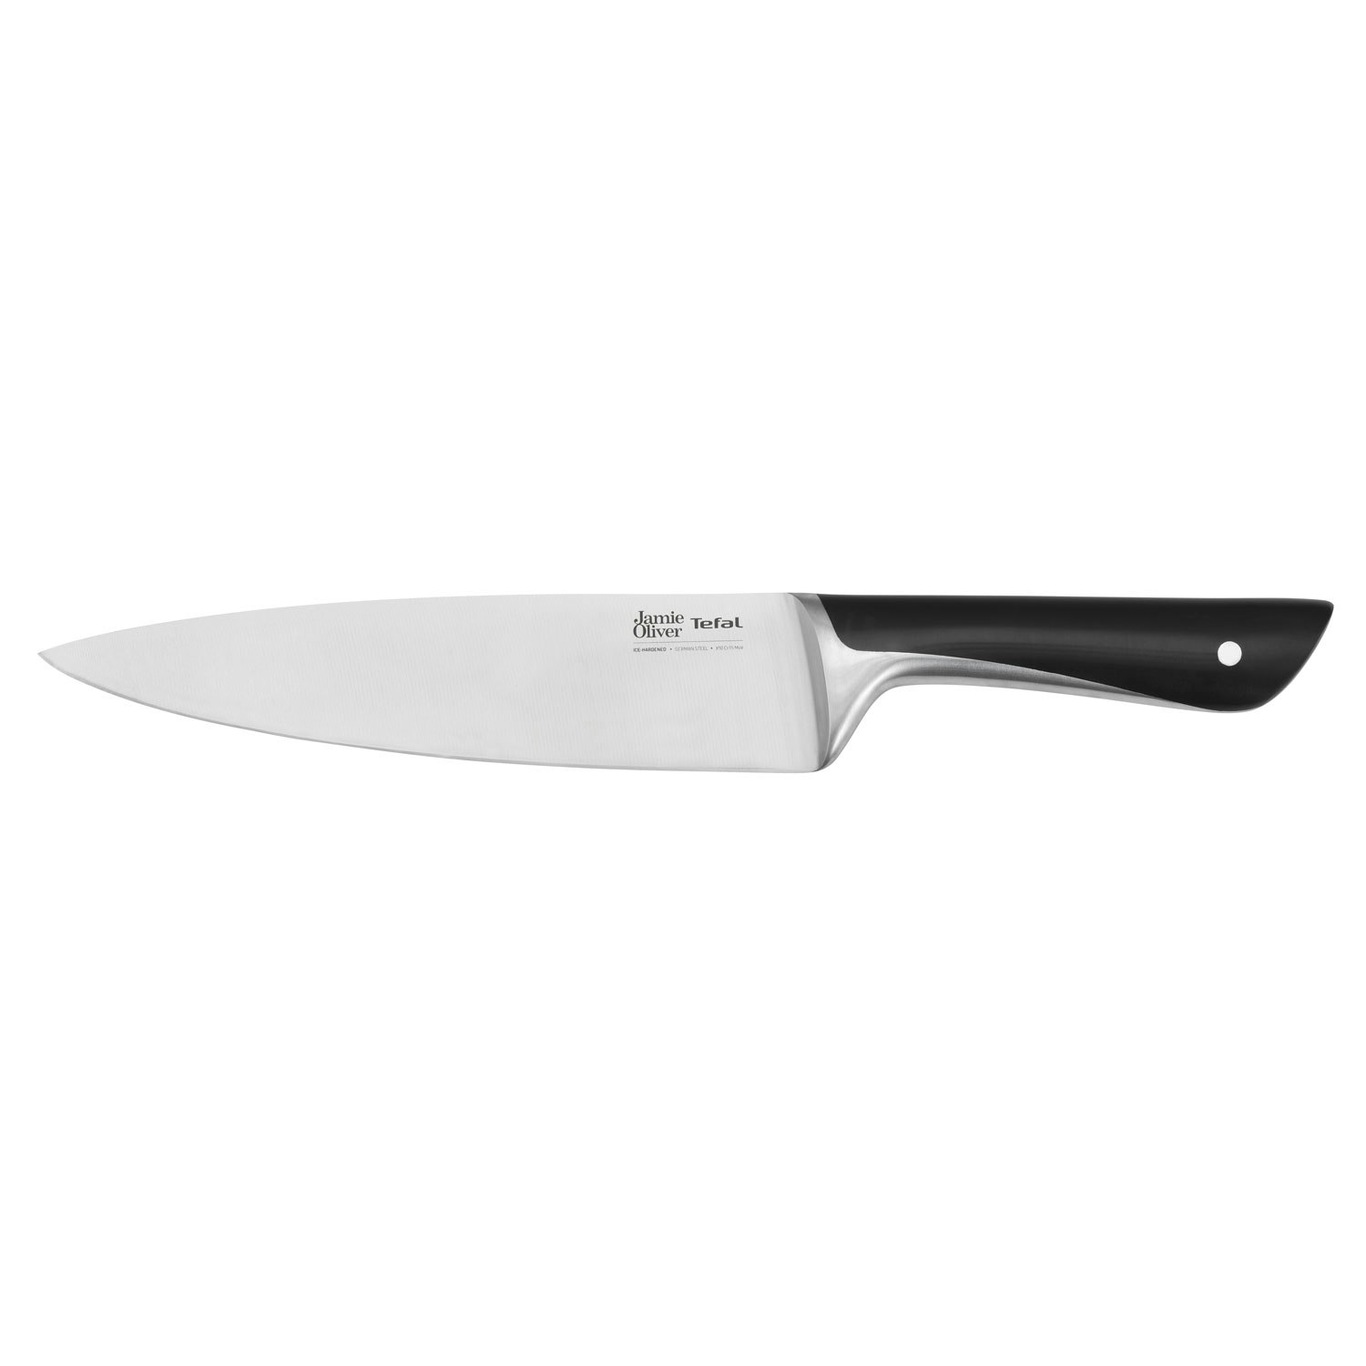 https://royaldesign.com/image/2/tefal-jamie-oliver-chef-knife-20-cm-0?w=800&quality=80